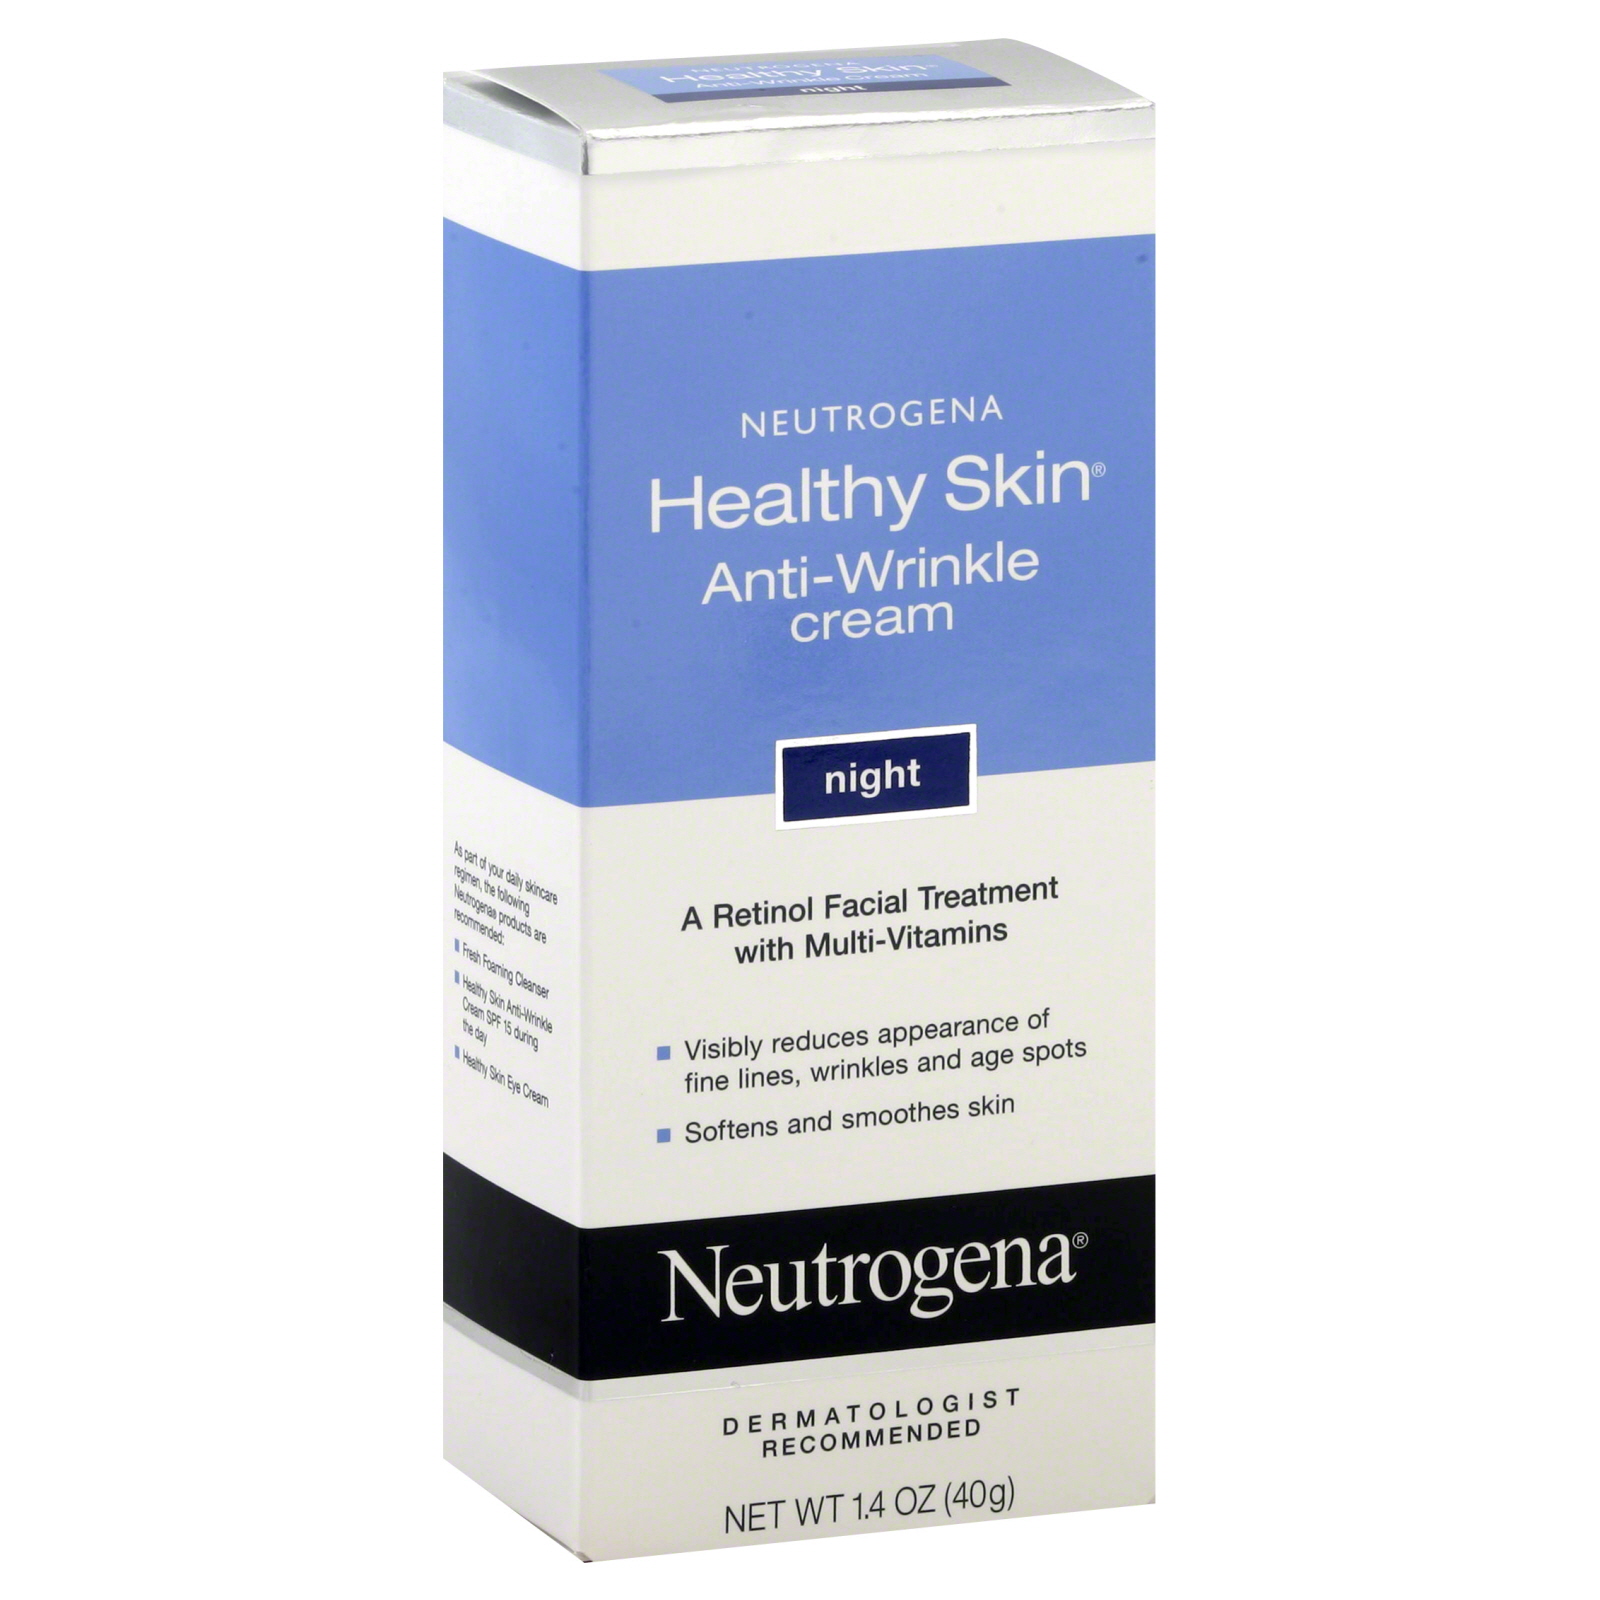 Neutrogena Healthy Skin Anti-Wrinkle Cream, Night, 1.4 oz (40 g)